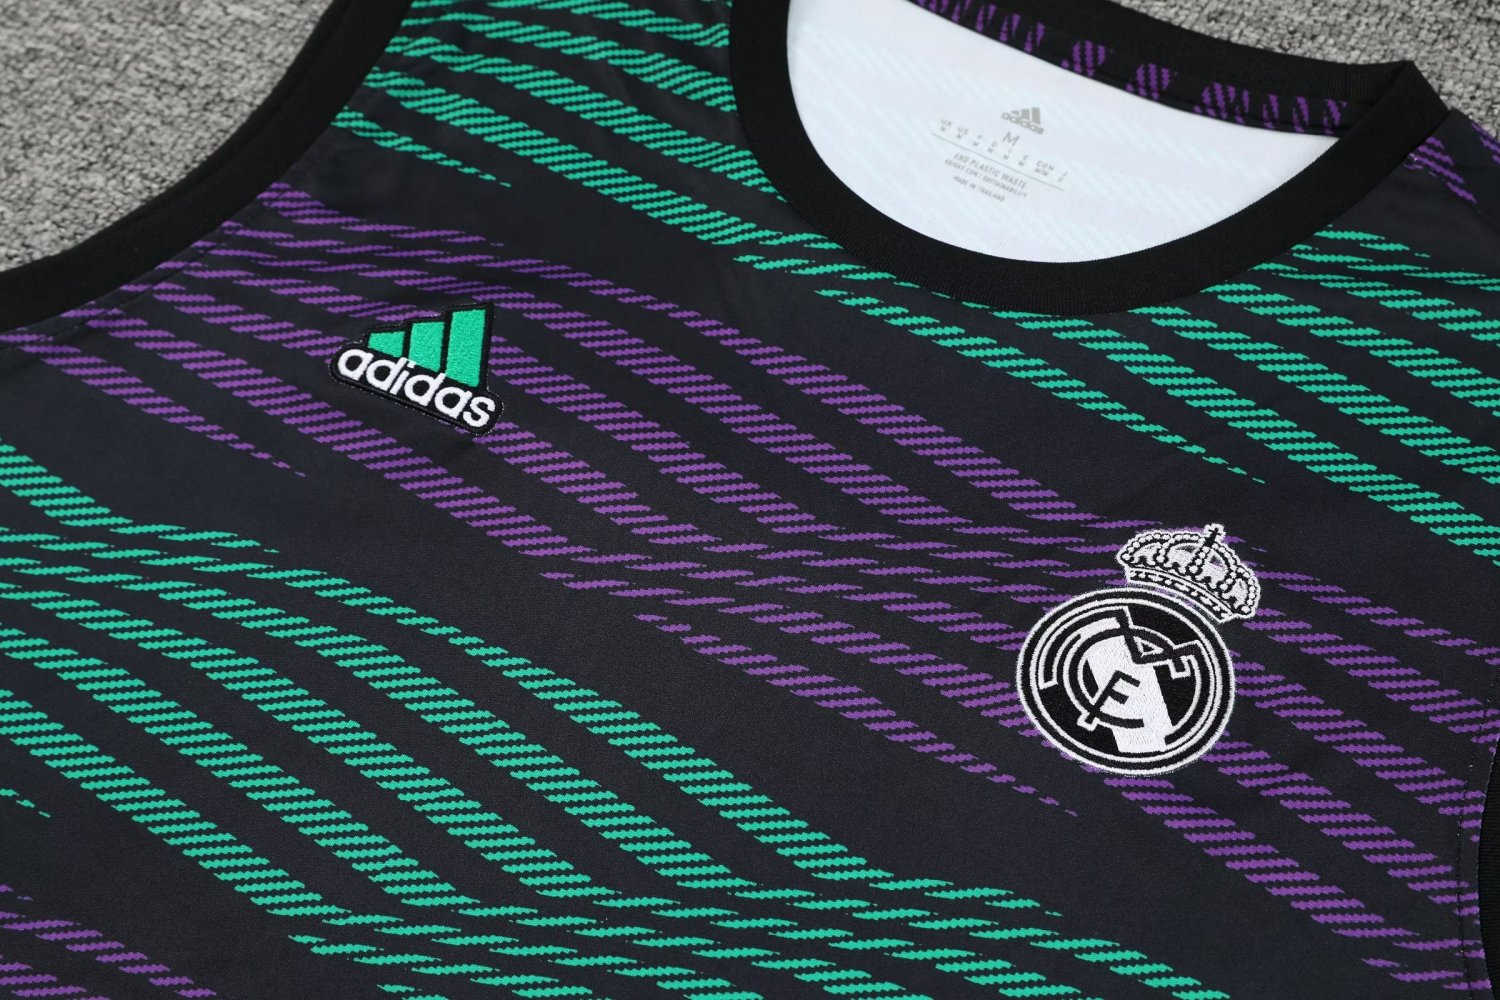 Real Madrid Soccer Singlet + Short Replica Green - Purple 2023/24 Mens